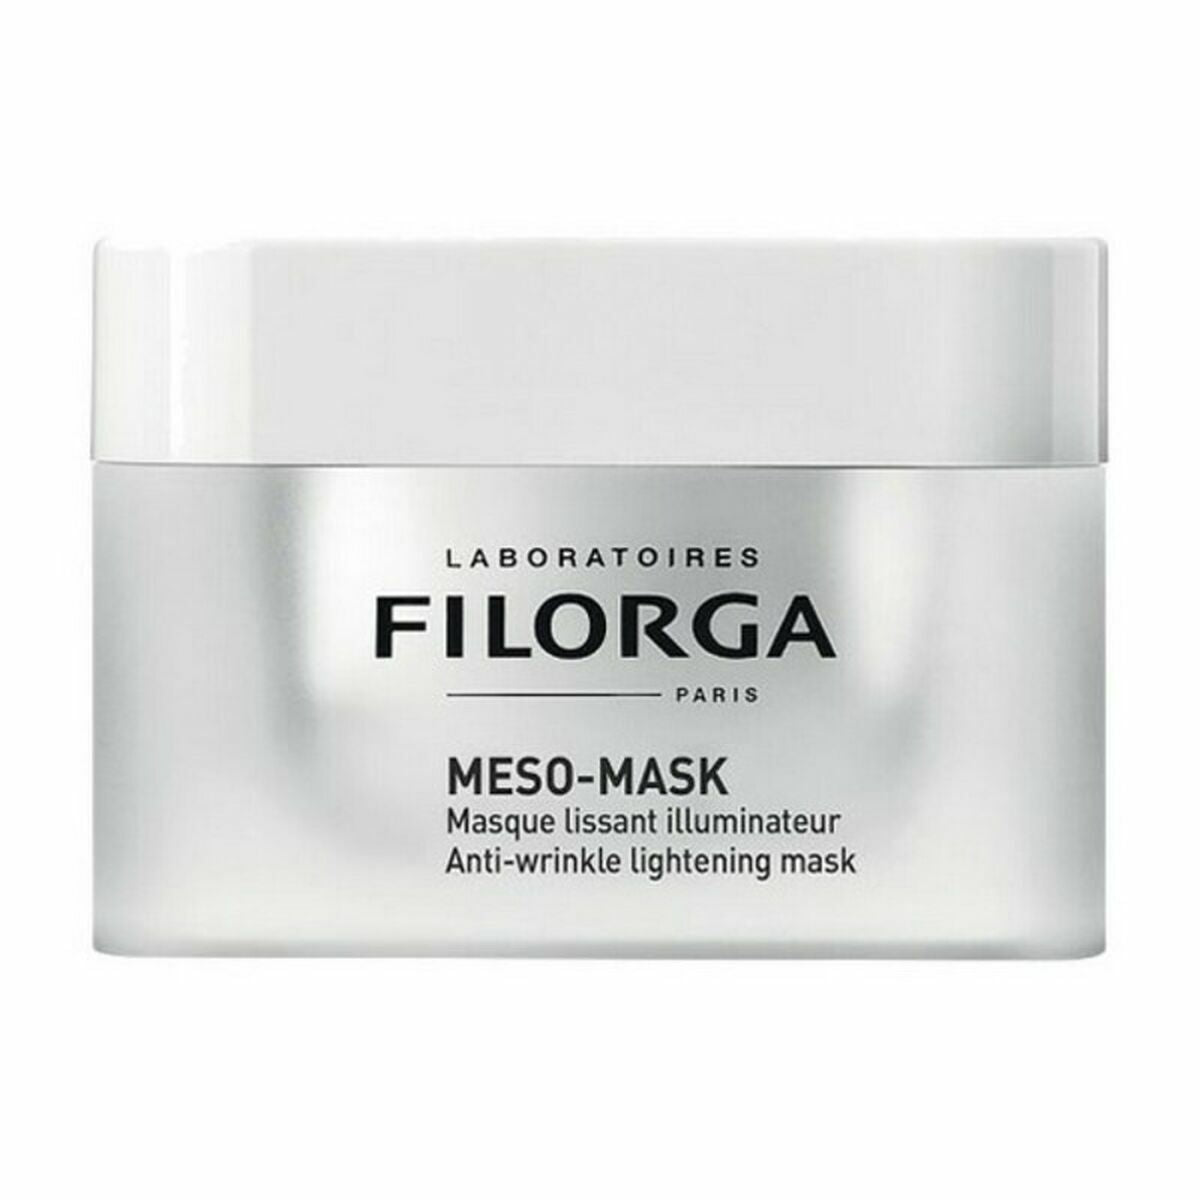 Masque facial Filorga 4857306 50 ml